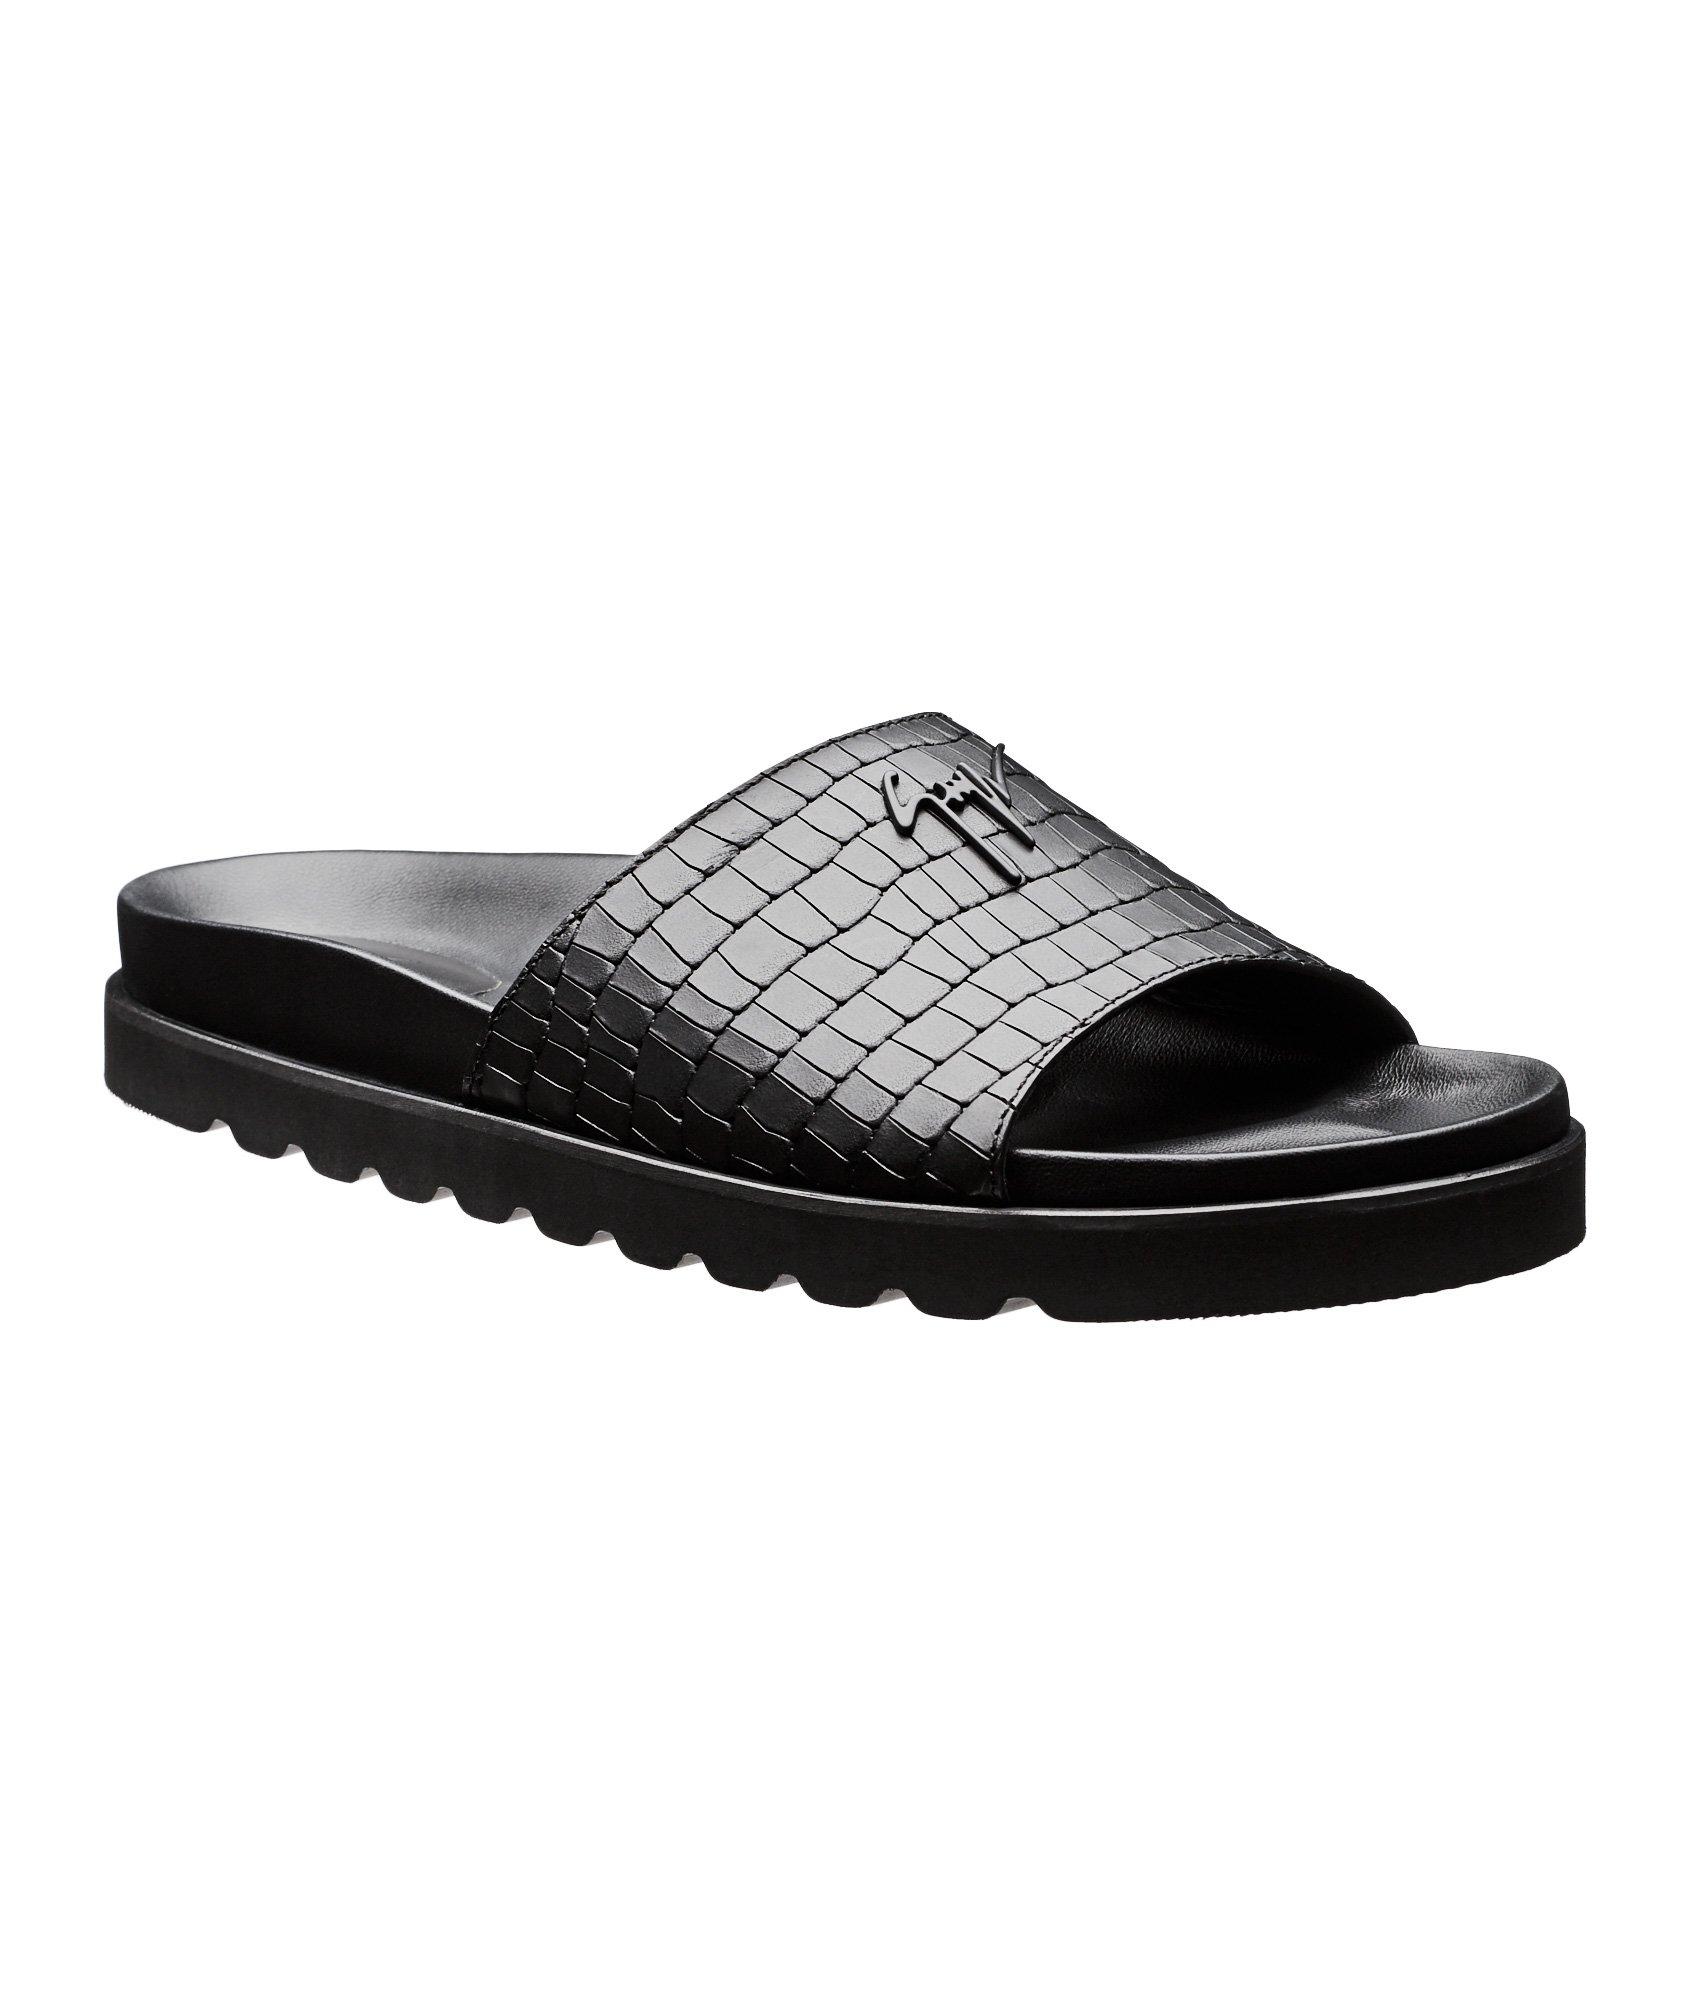 Leather Slide Sandals image 0